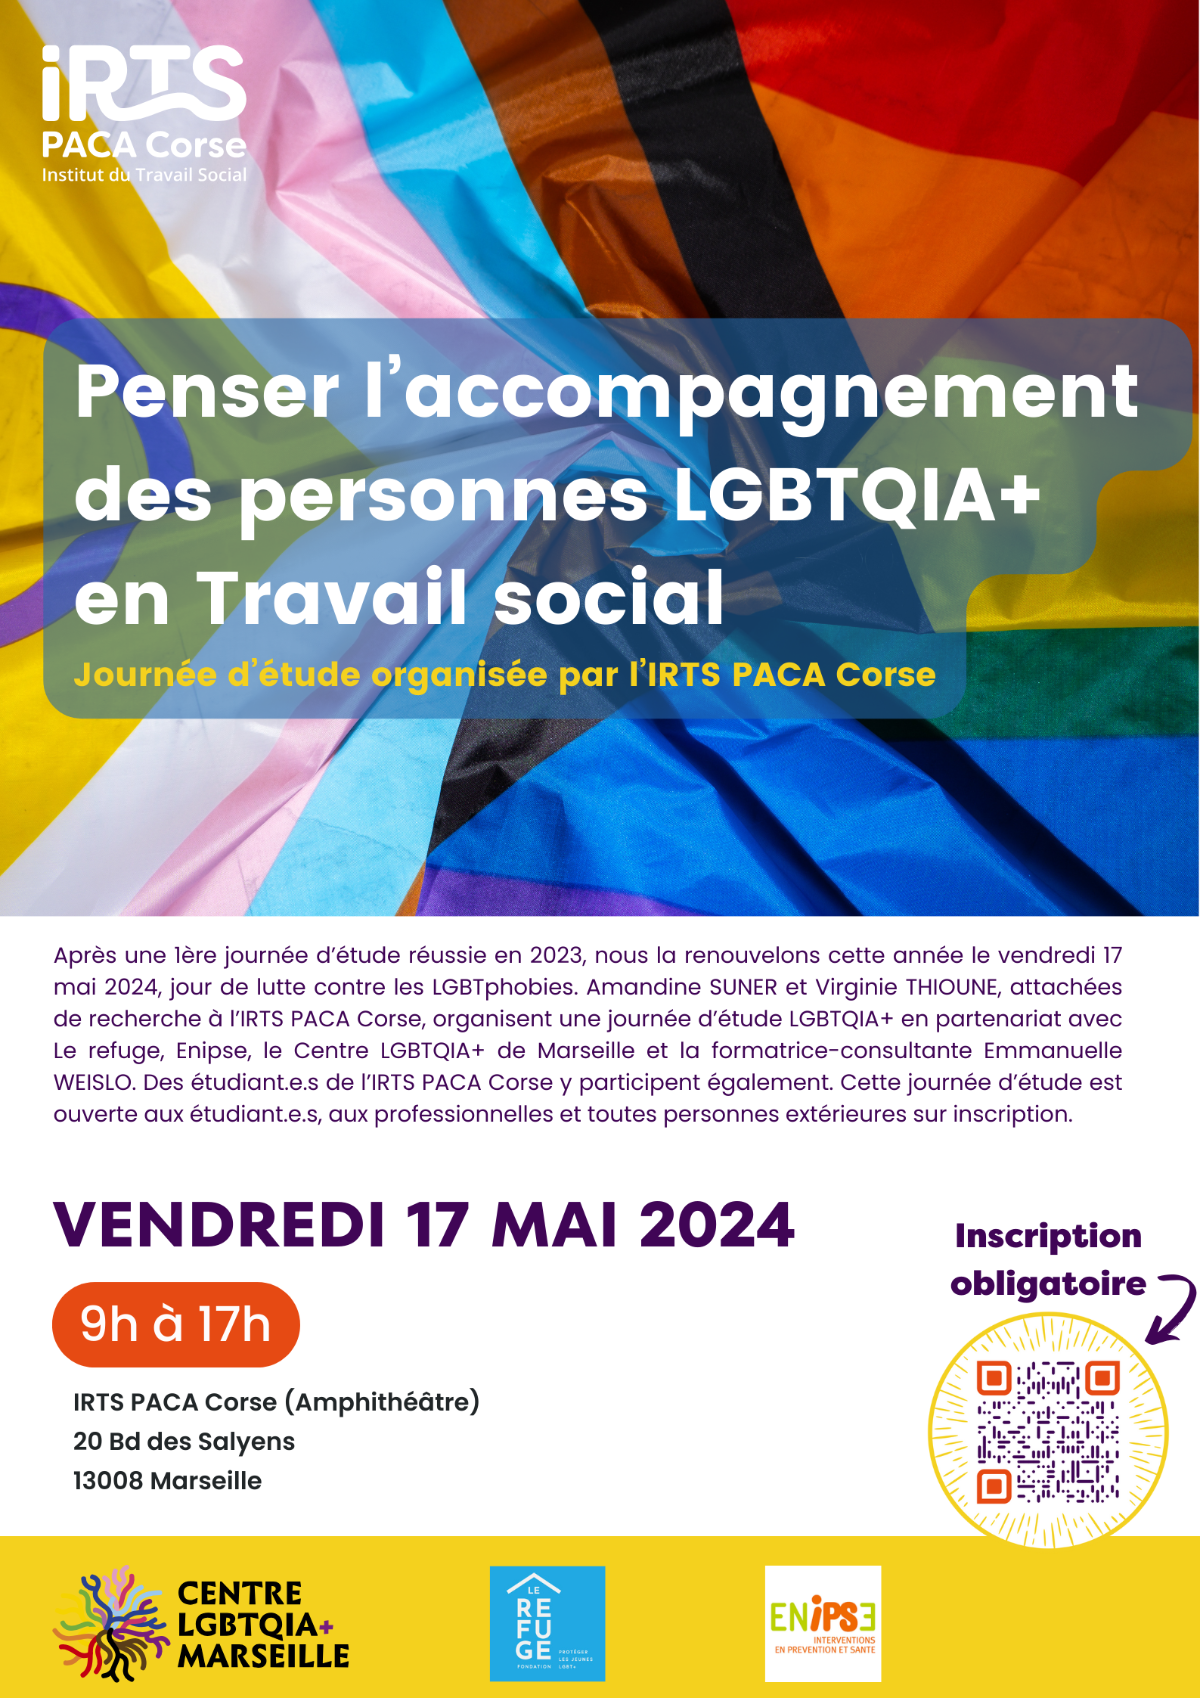 Journée d'étude : "Penser l'accompagnement des personnes LGBTQIA+ en travail social" @ IRTS PACA Corse